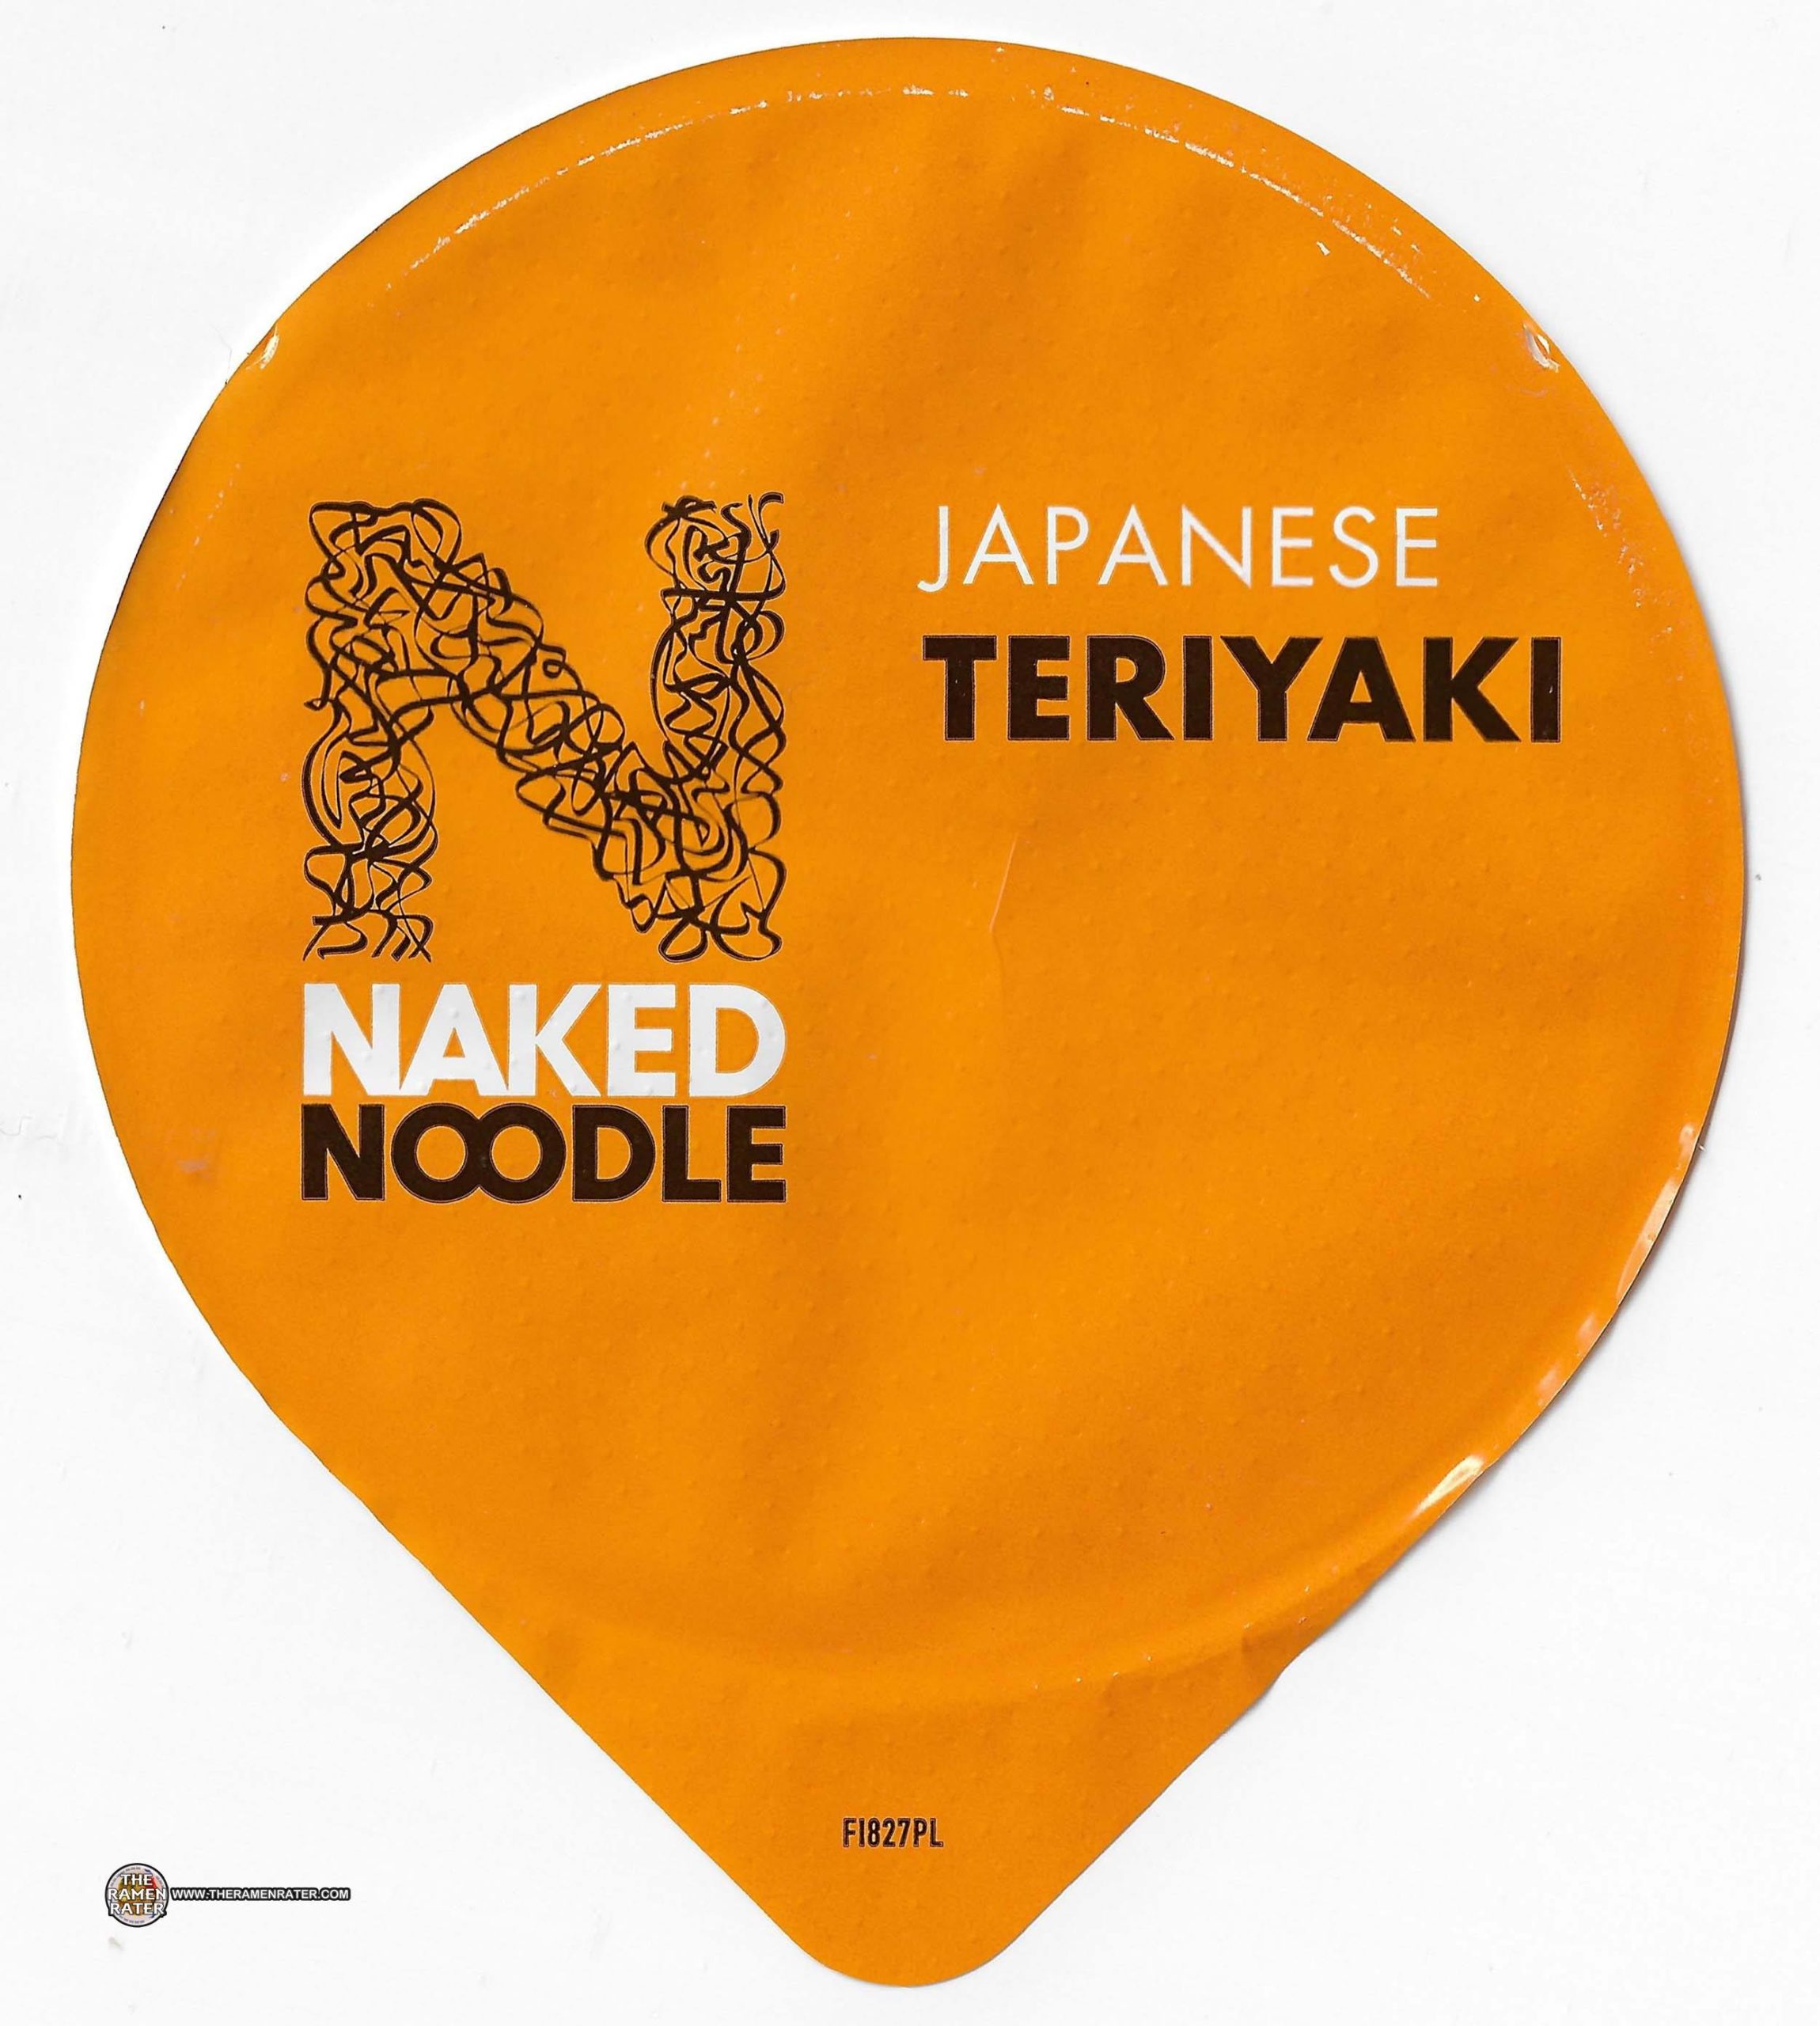 Naked Hala Turk - 4252: Naked Noodle Japanese Teriyaki - United Kingdom